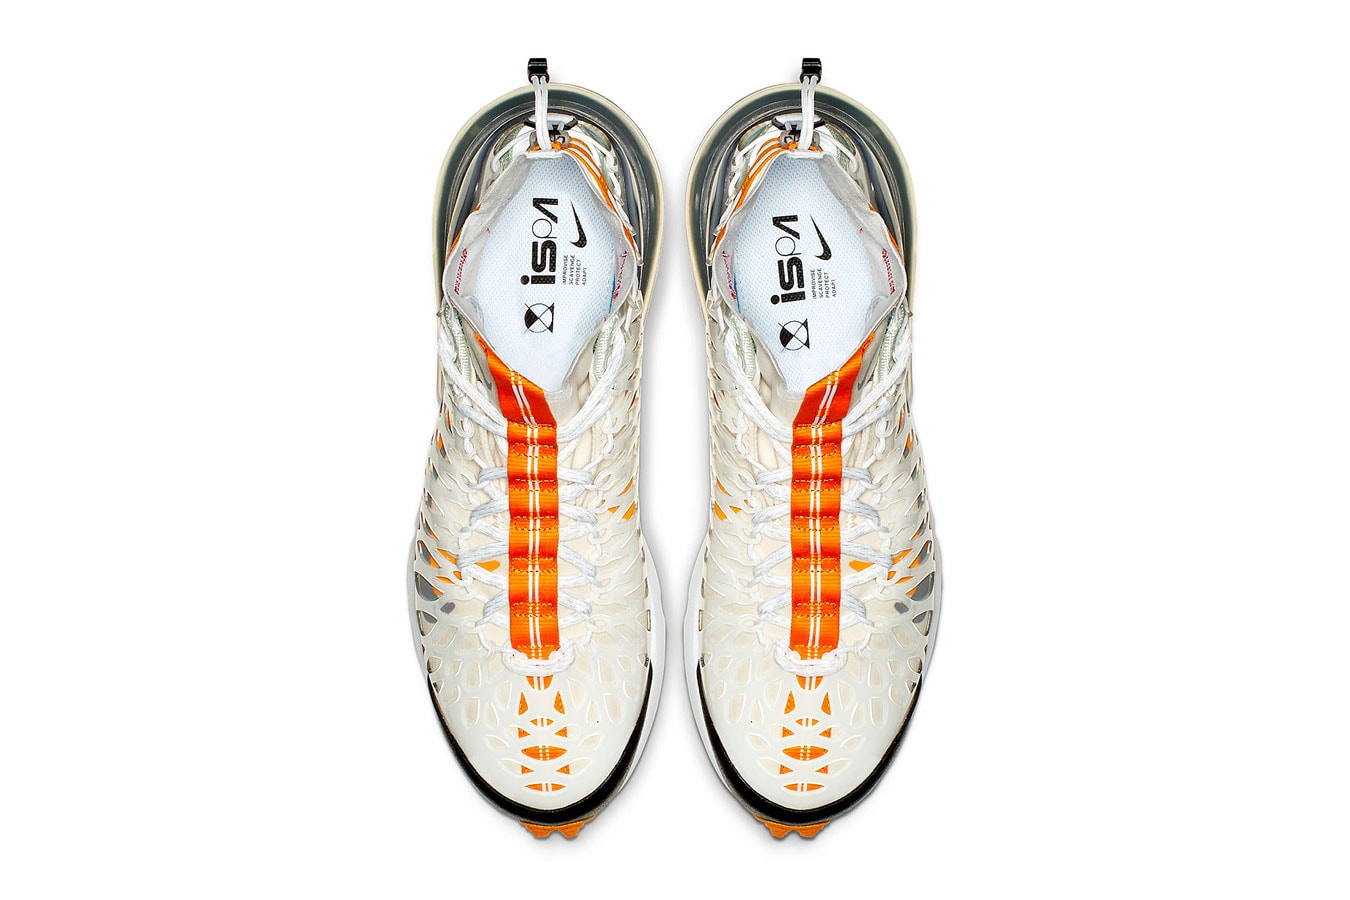 Nike ISPA Air Max 270 SP SOE First Look sneakers black white grey orange swoosh